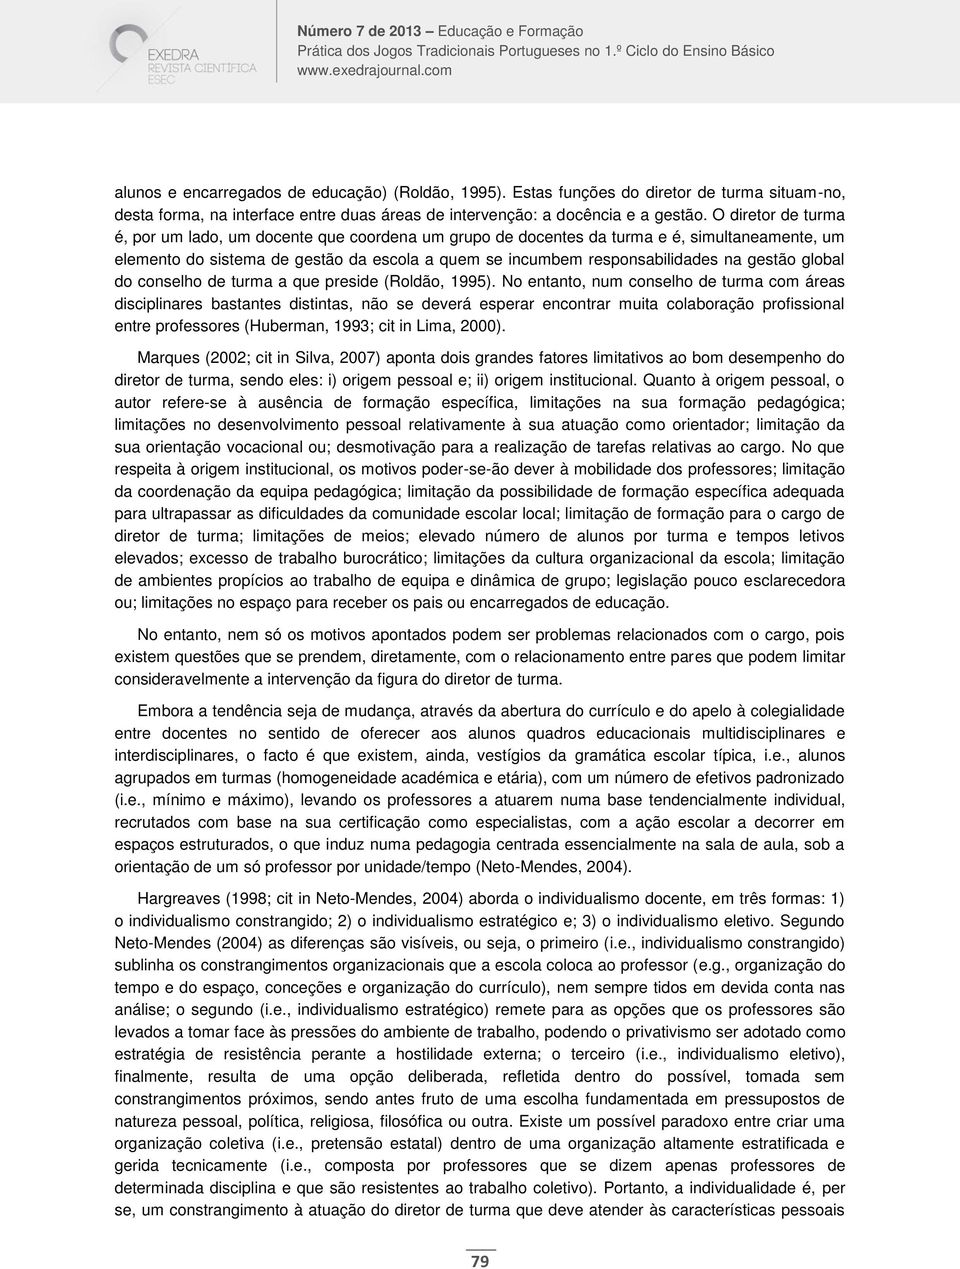 gestão global do conselho de turma a que preside (Roldão, 1995).